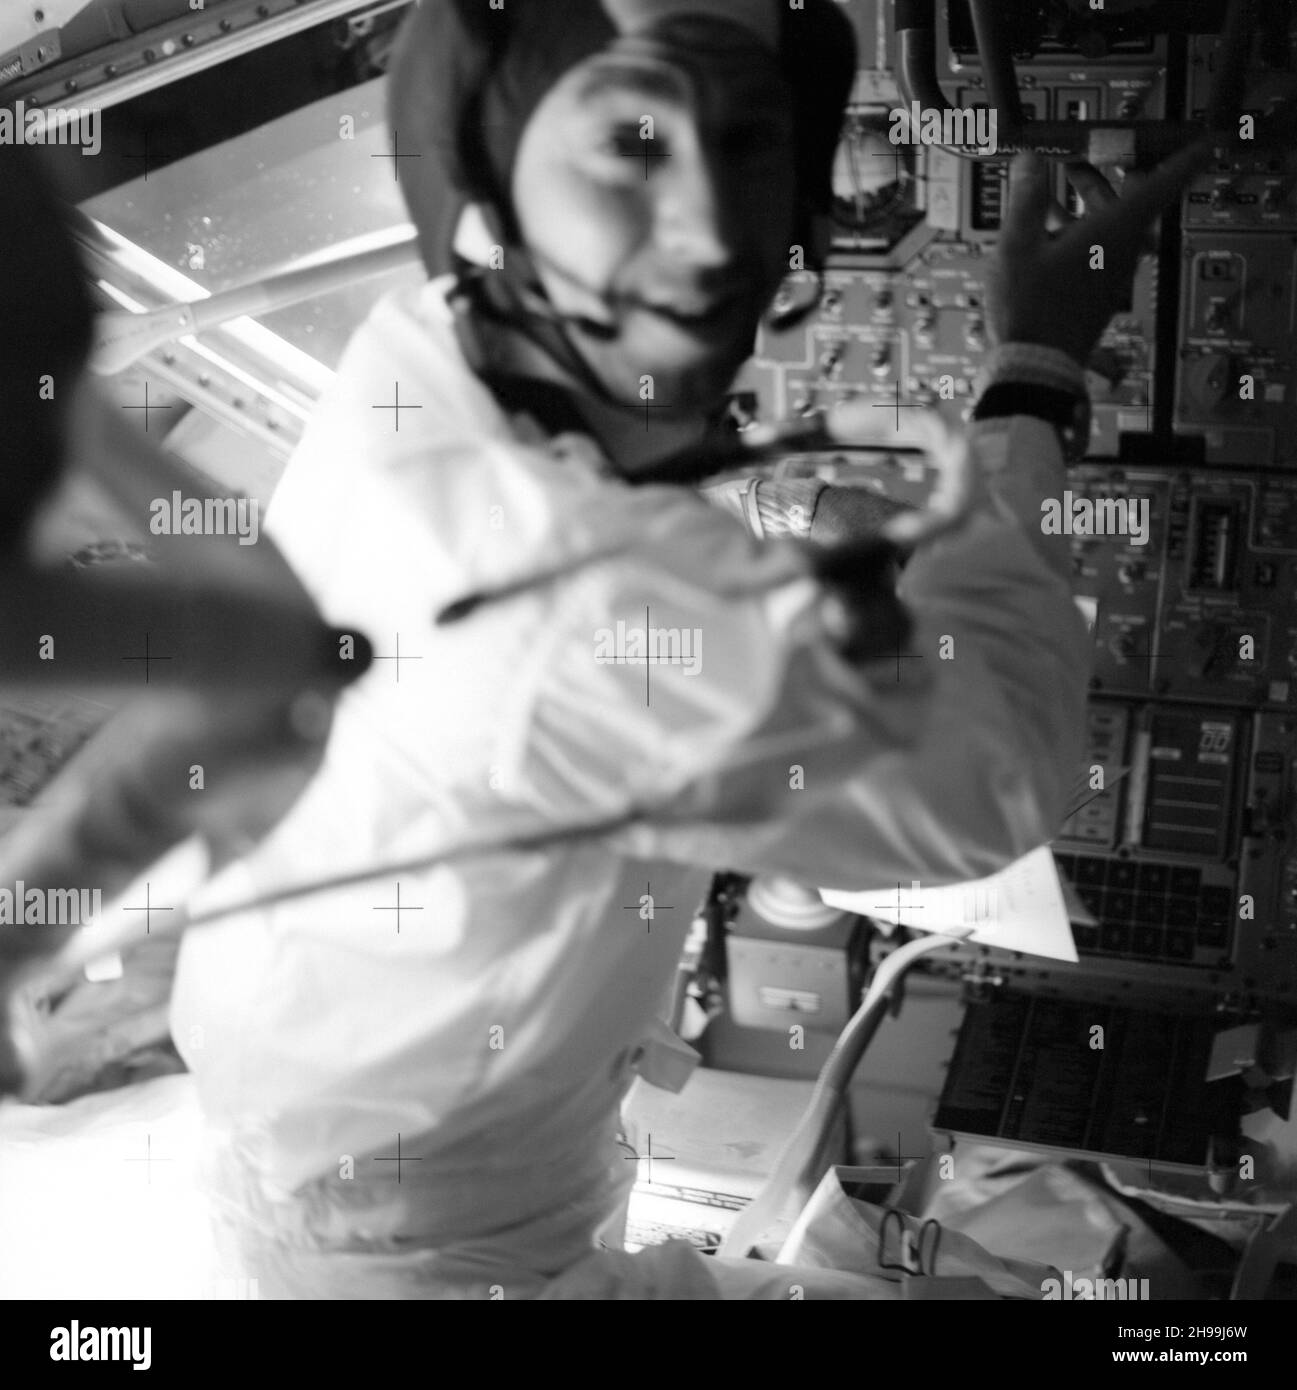 El astronauta James A. Lovell Jr., comandante, en su puesto en el Módulo Lunar (LM) durante la misión Apolo 13 Foto de stock